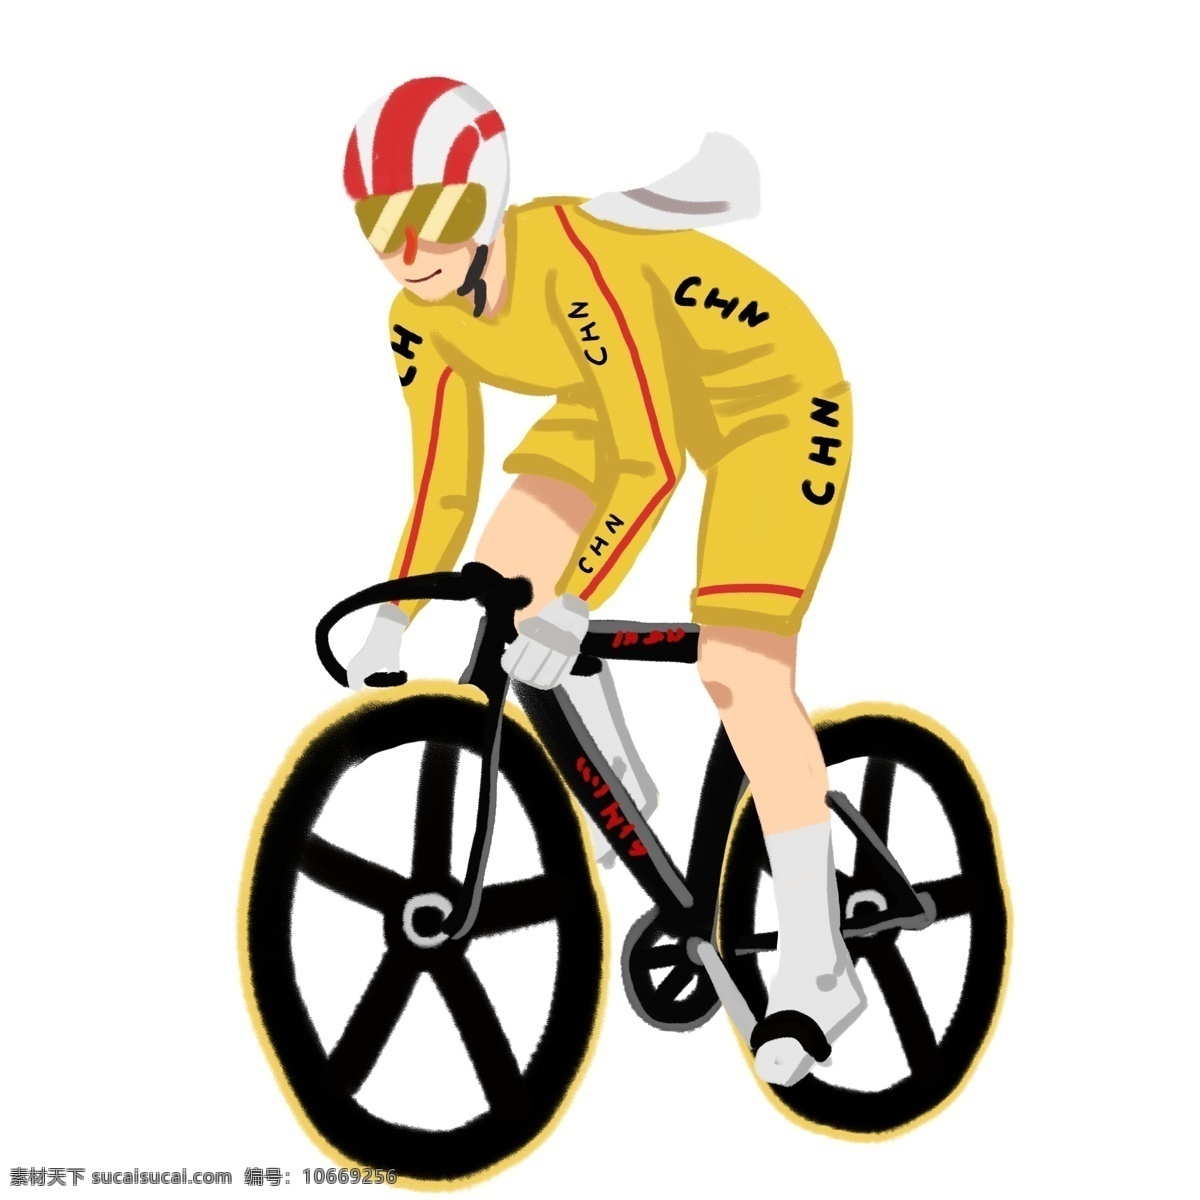 运动会 奥运会 自行车 比赛 竞技 速度 奥运项目 体育 体育项目 速度比赛 运动员 黄色 健身 爱好 锻炼 卡通人物 手绘 人物